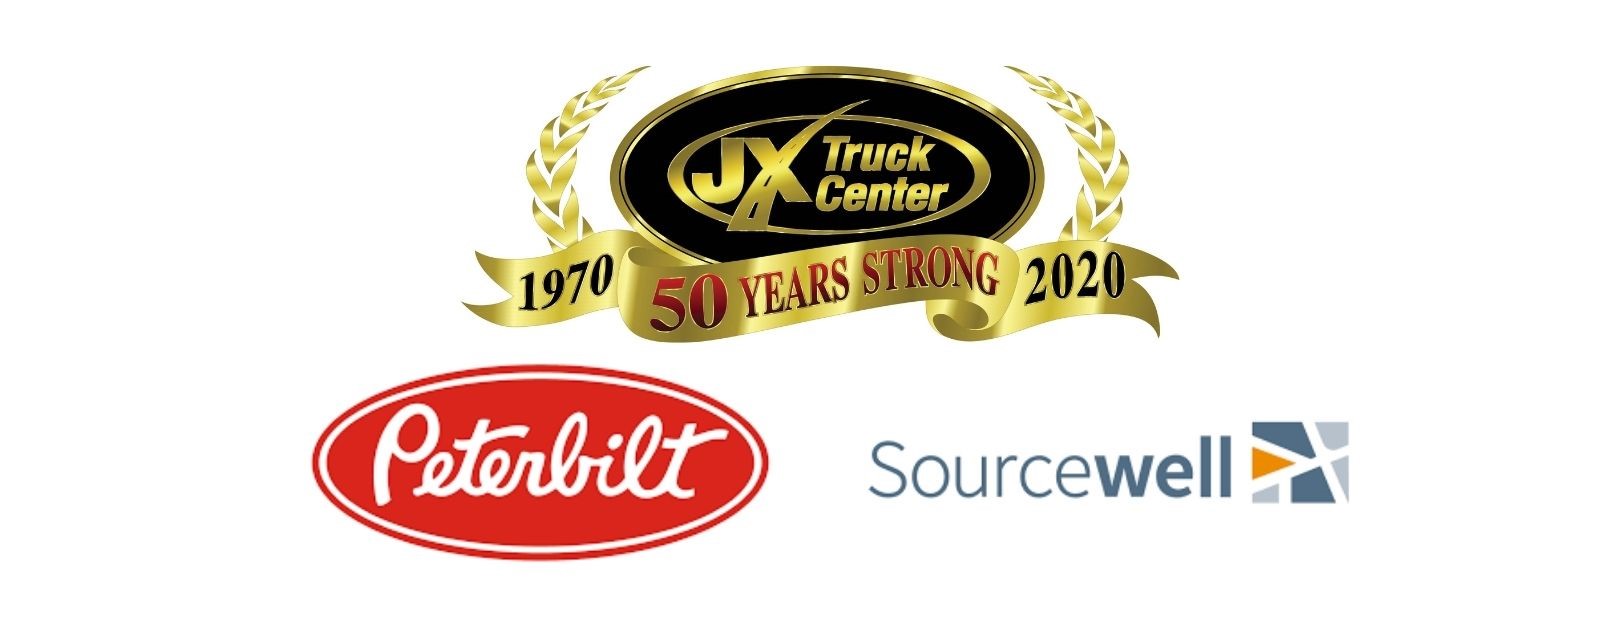 JX Truck Center logo, Peterbilt Logo, Sourcewell Logo